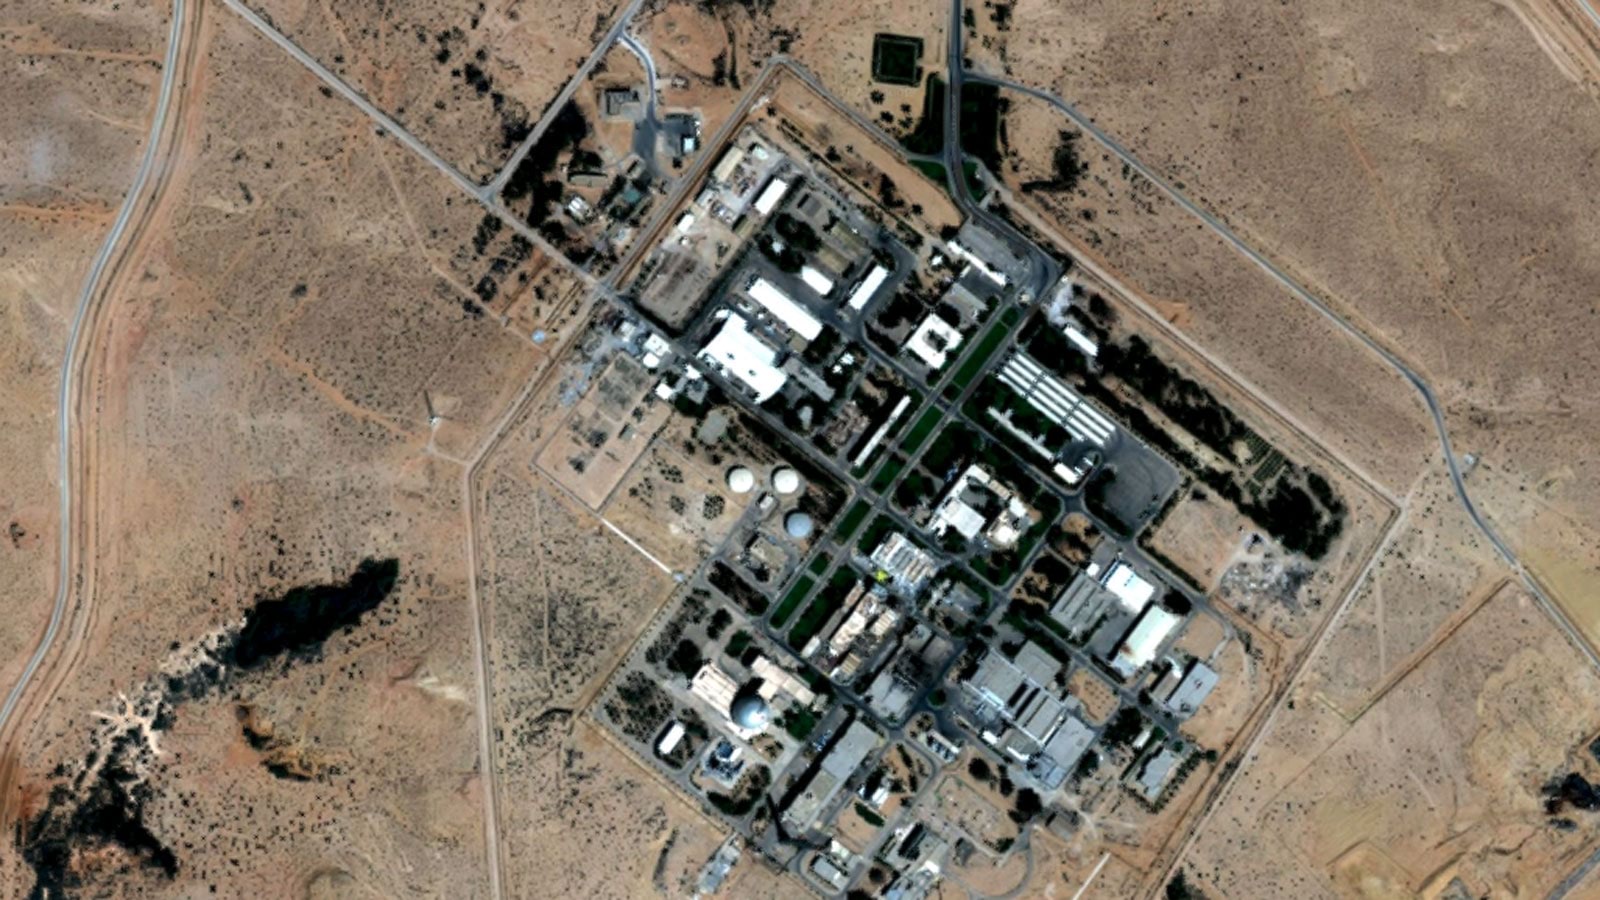 منشآت إسرائيل العسكرية تظهر بوضوح في صور الأقمار الصناعية منها" ديمونا" لأول مرة